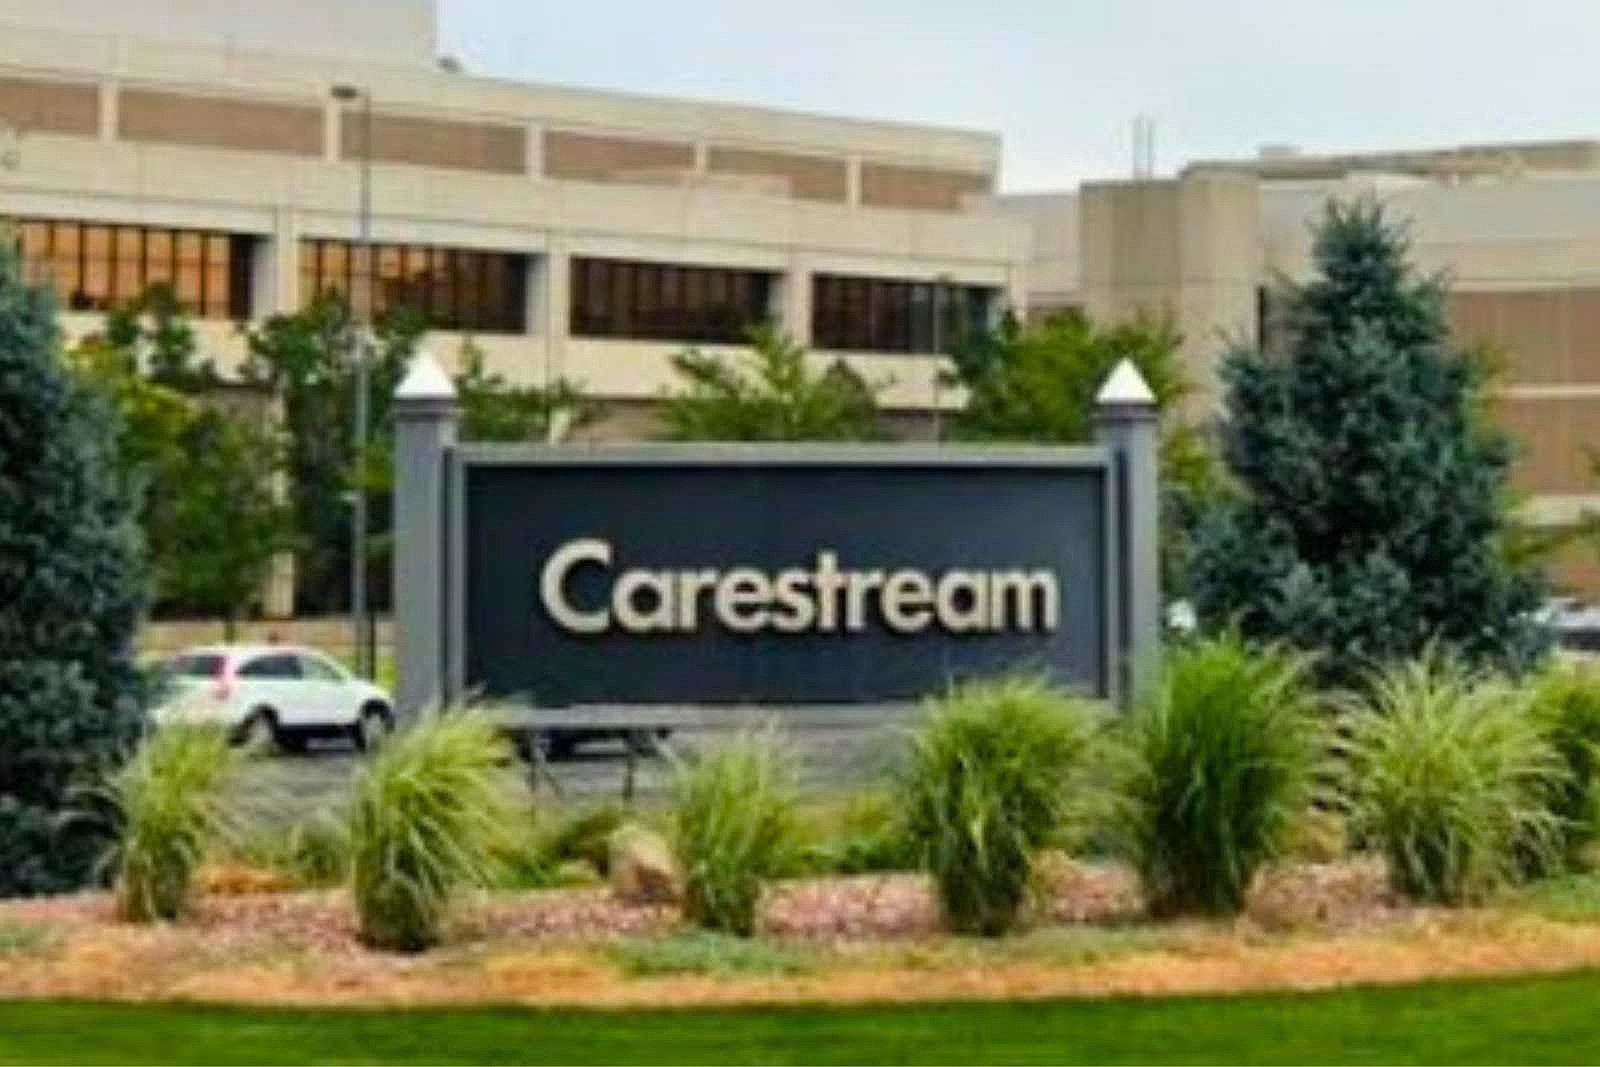 Carestream in Windsor, Colorado